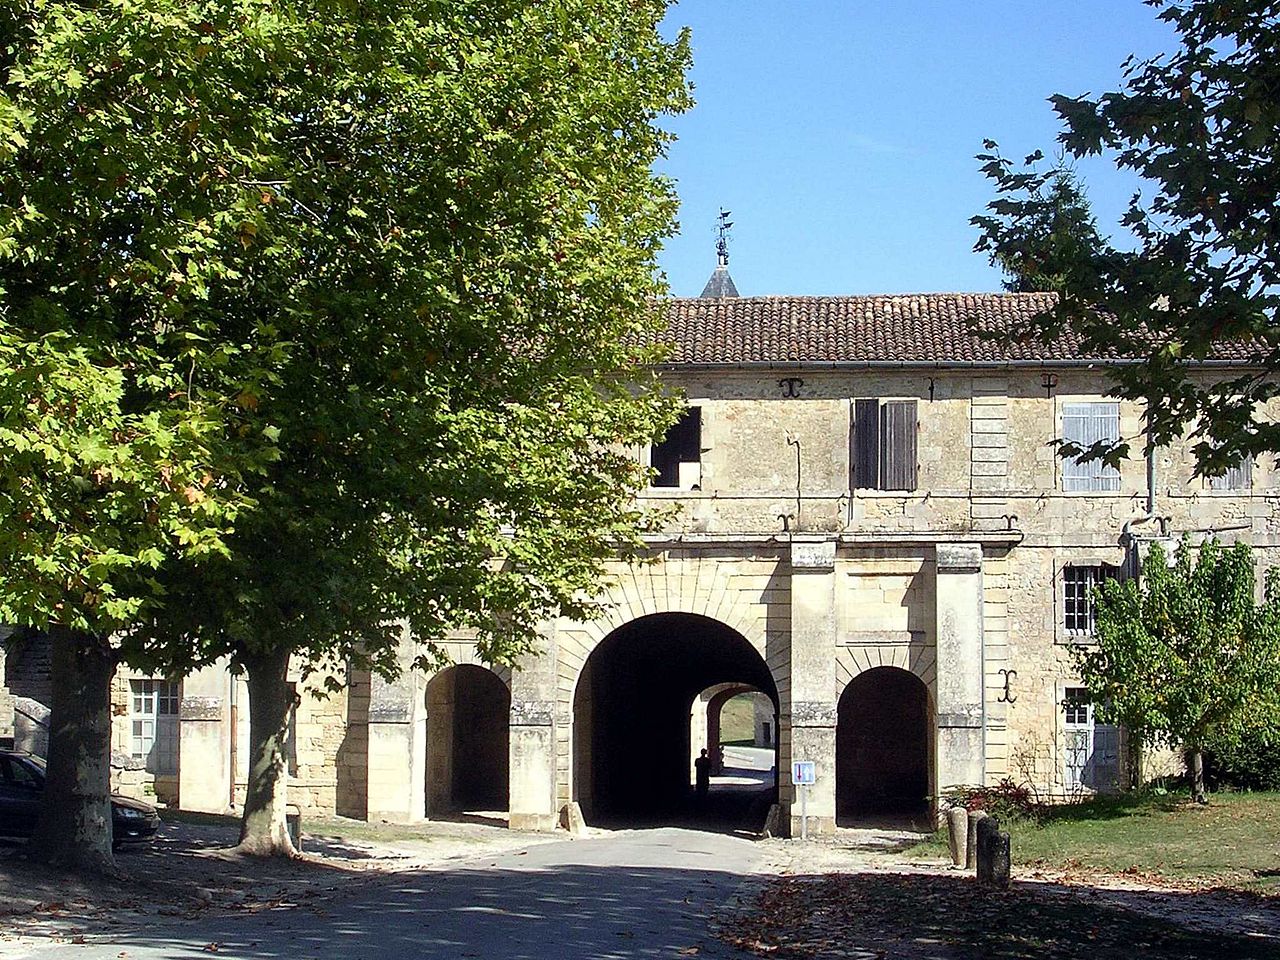 On retrouvre ici la citadelle de Blaye en France, on peut voir sur la photo la porte royale